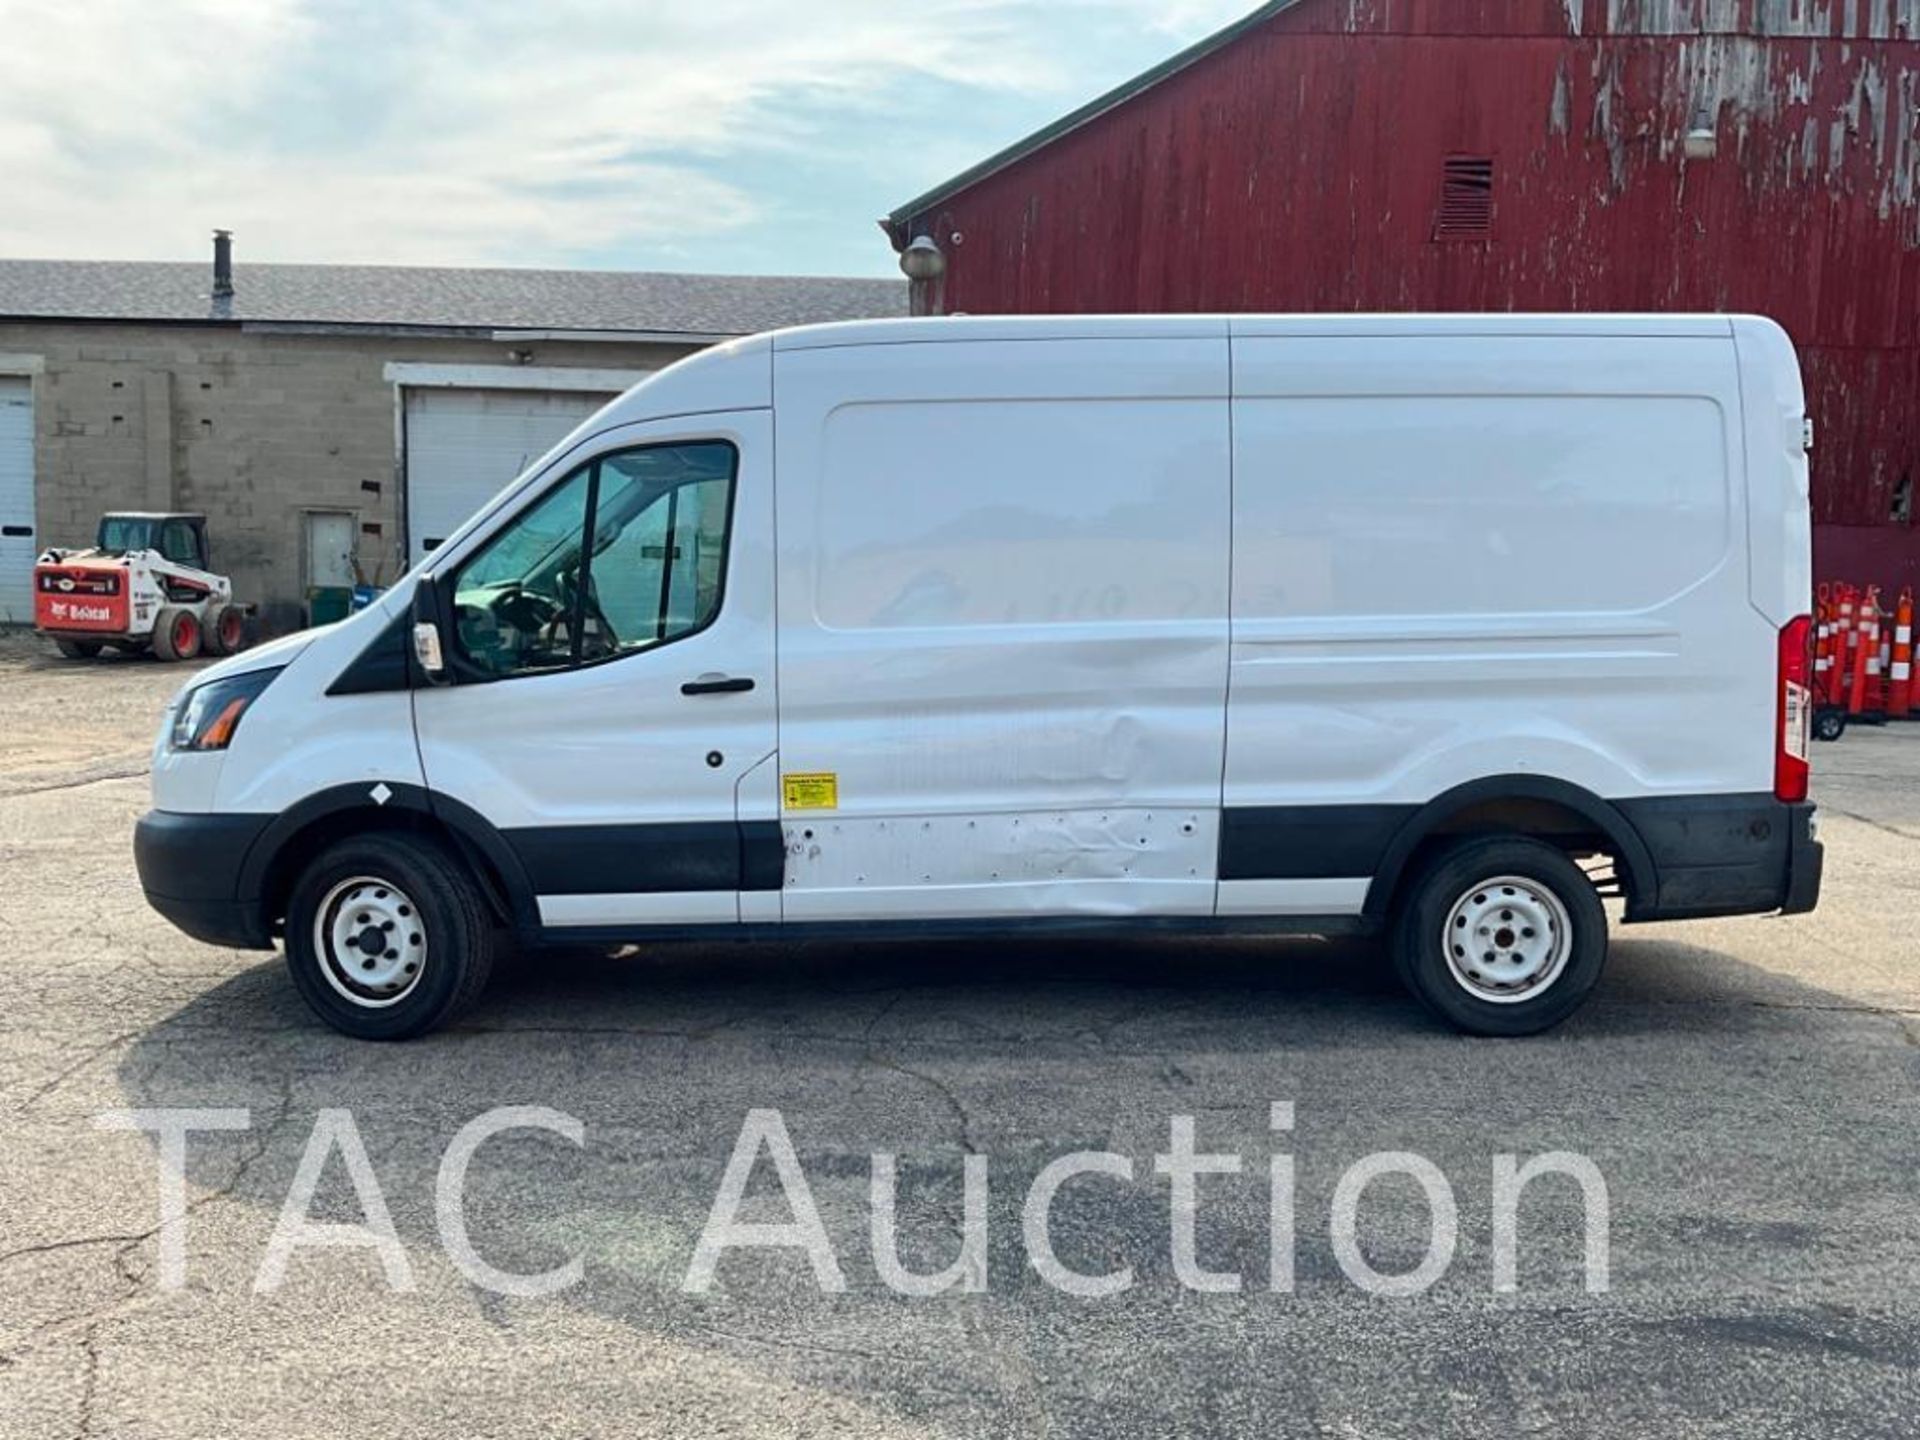 2019 Ford Transit 150 Cargo Van - Image 7 of 44